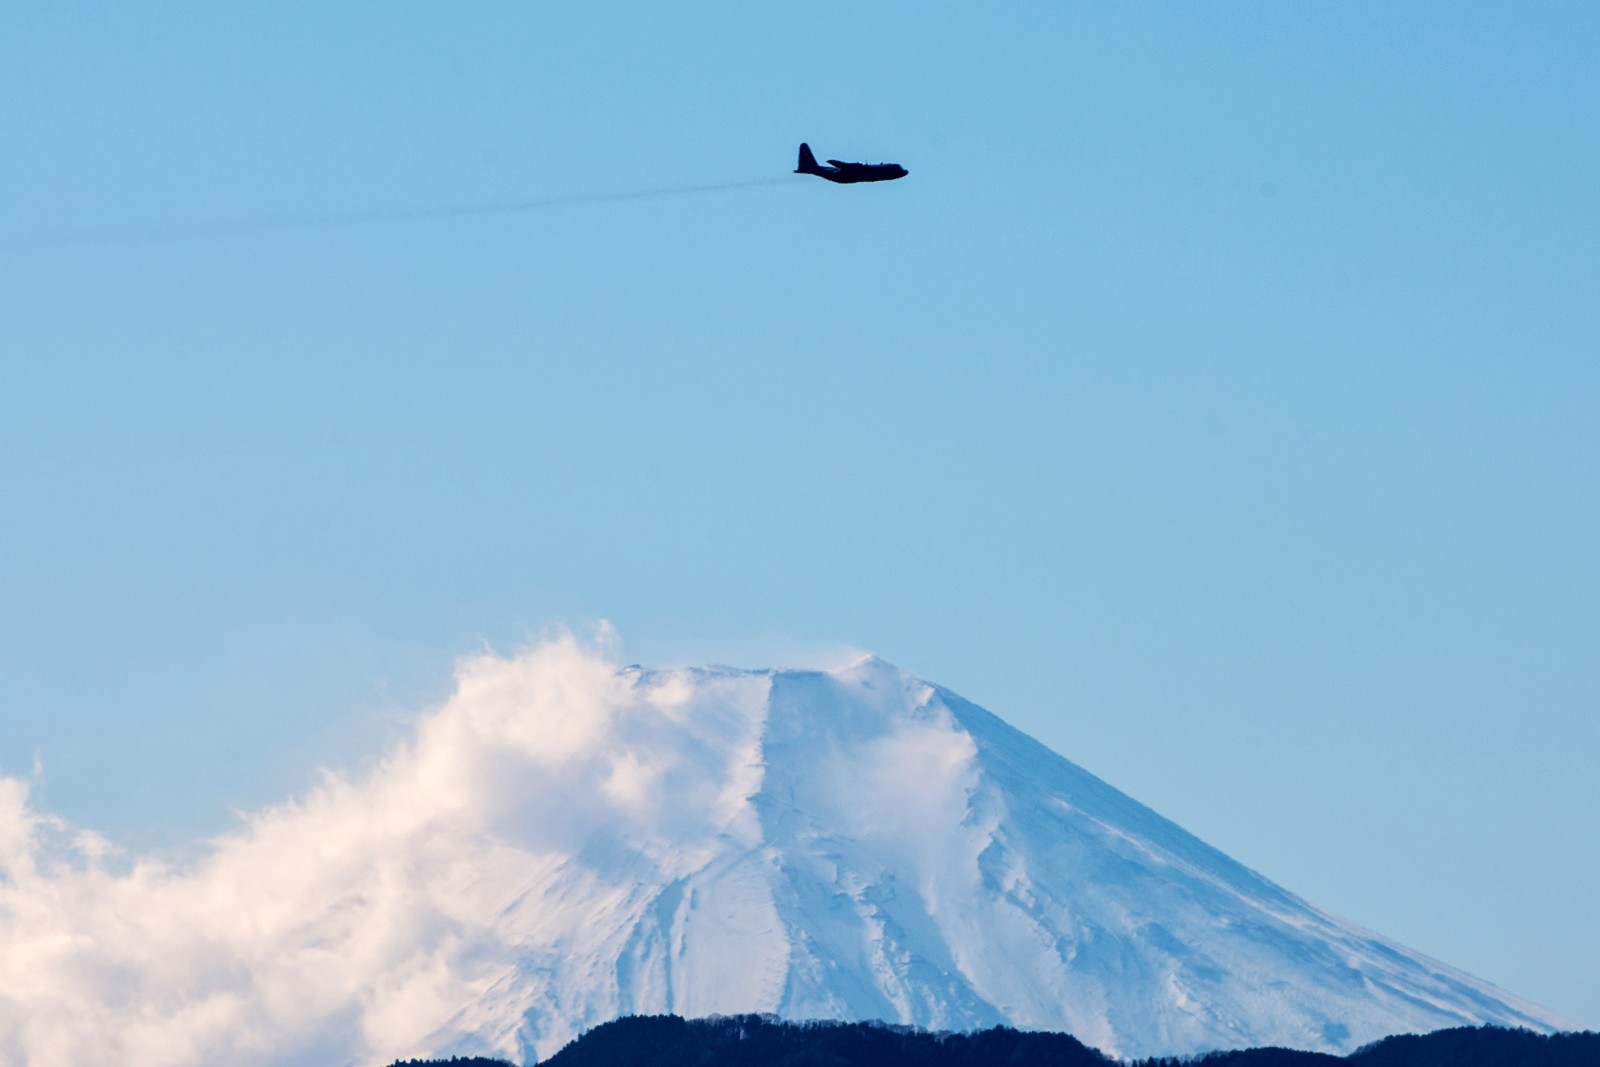 ท้องฟ้า, ประเทศญี่ปุ่น, เครื่องบิน, จังหวัดโตเกียว, แอ่ง, C-130 Hercules